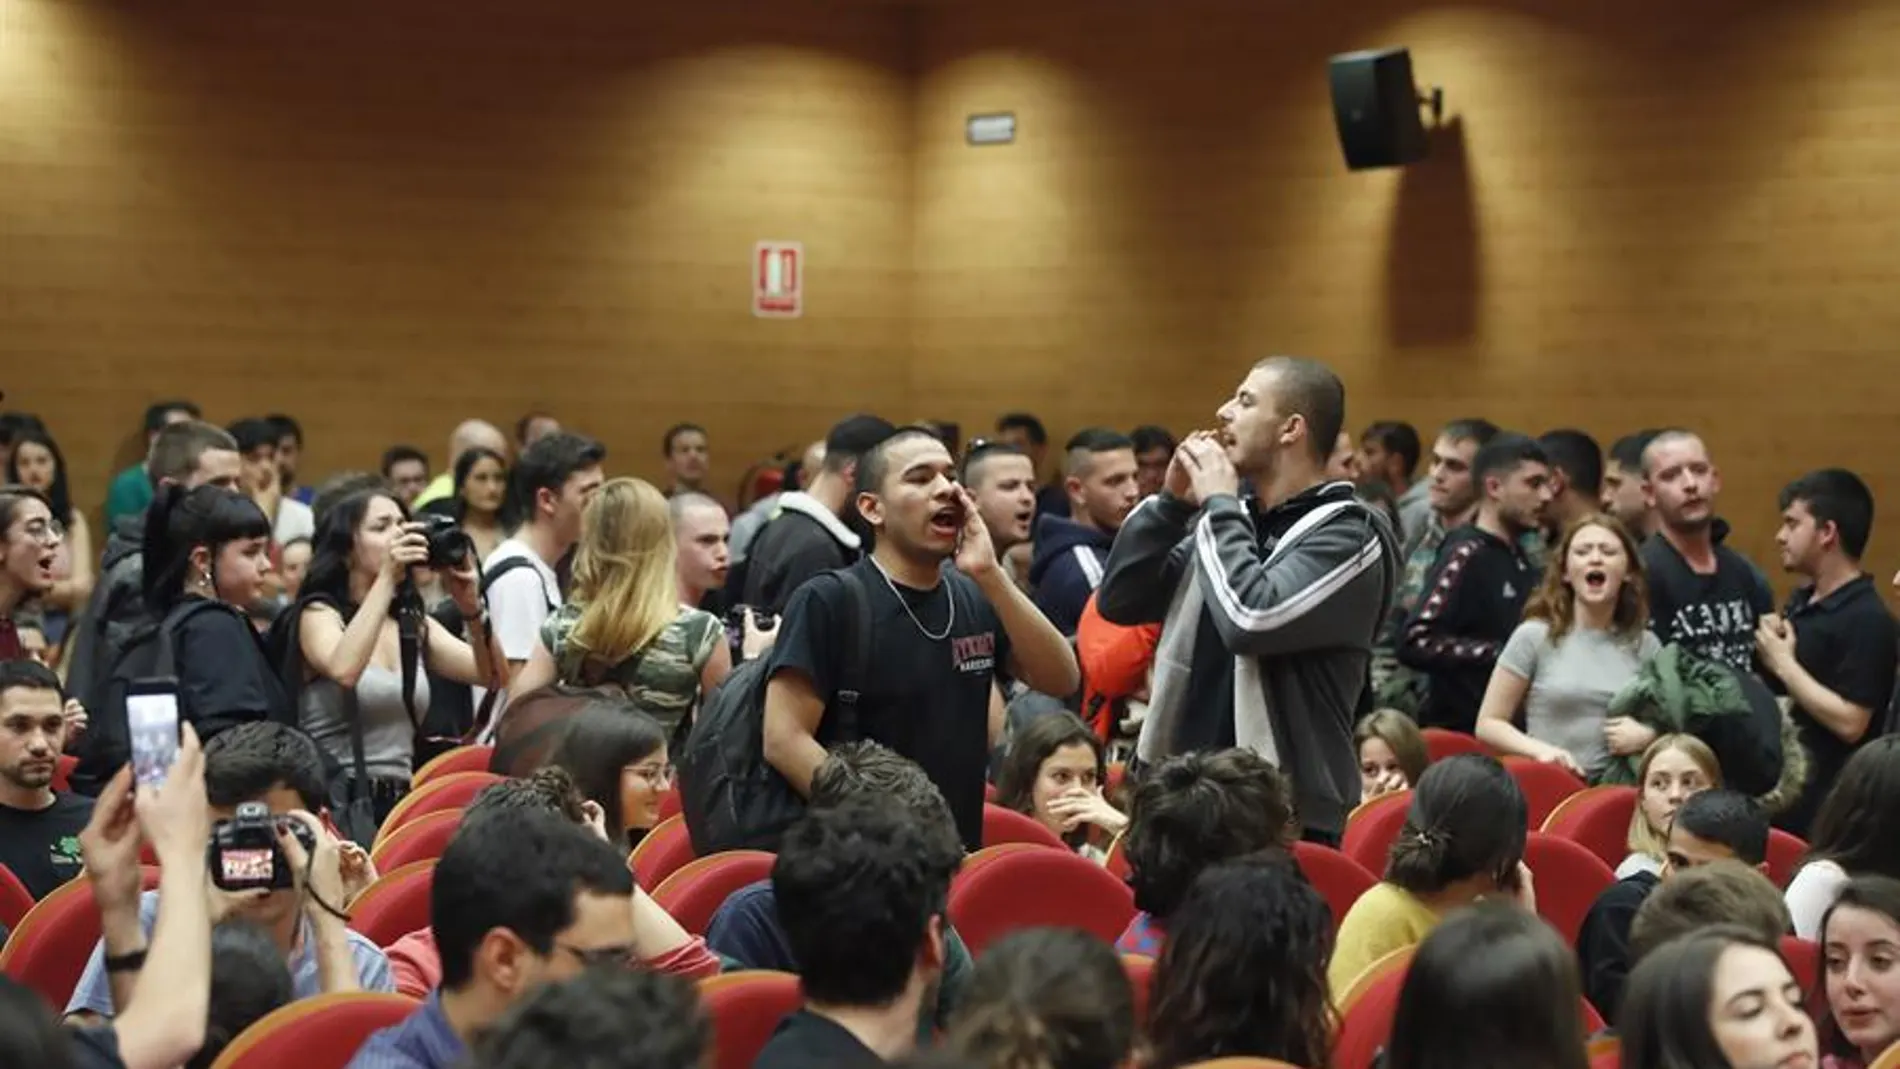 Un grupo de personas interrumpen el acto de Pablo Iglesias